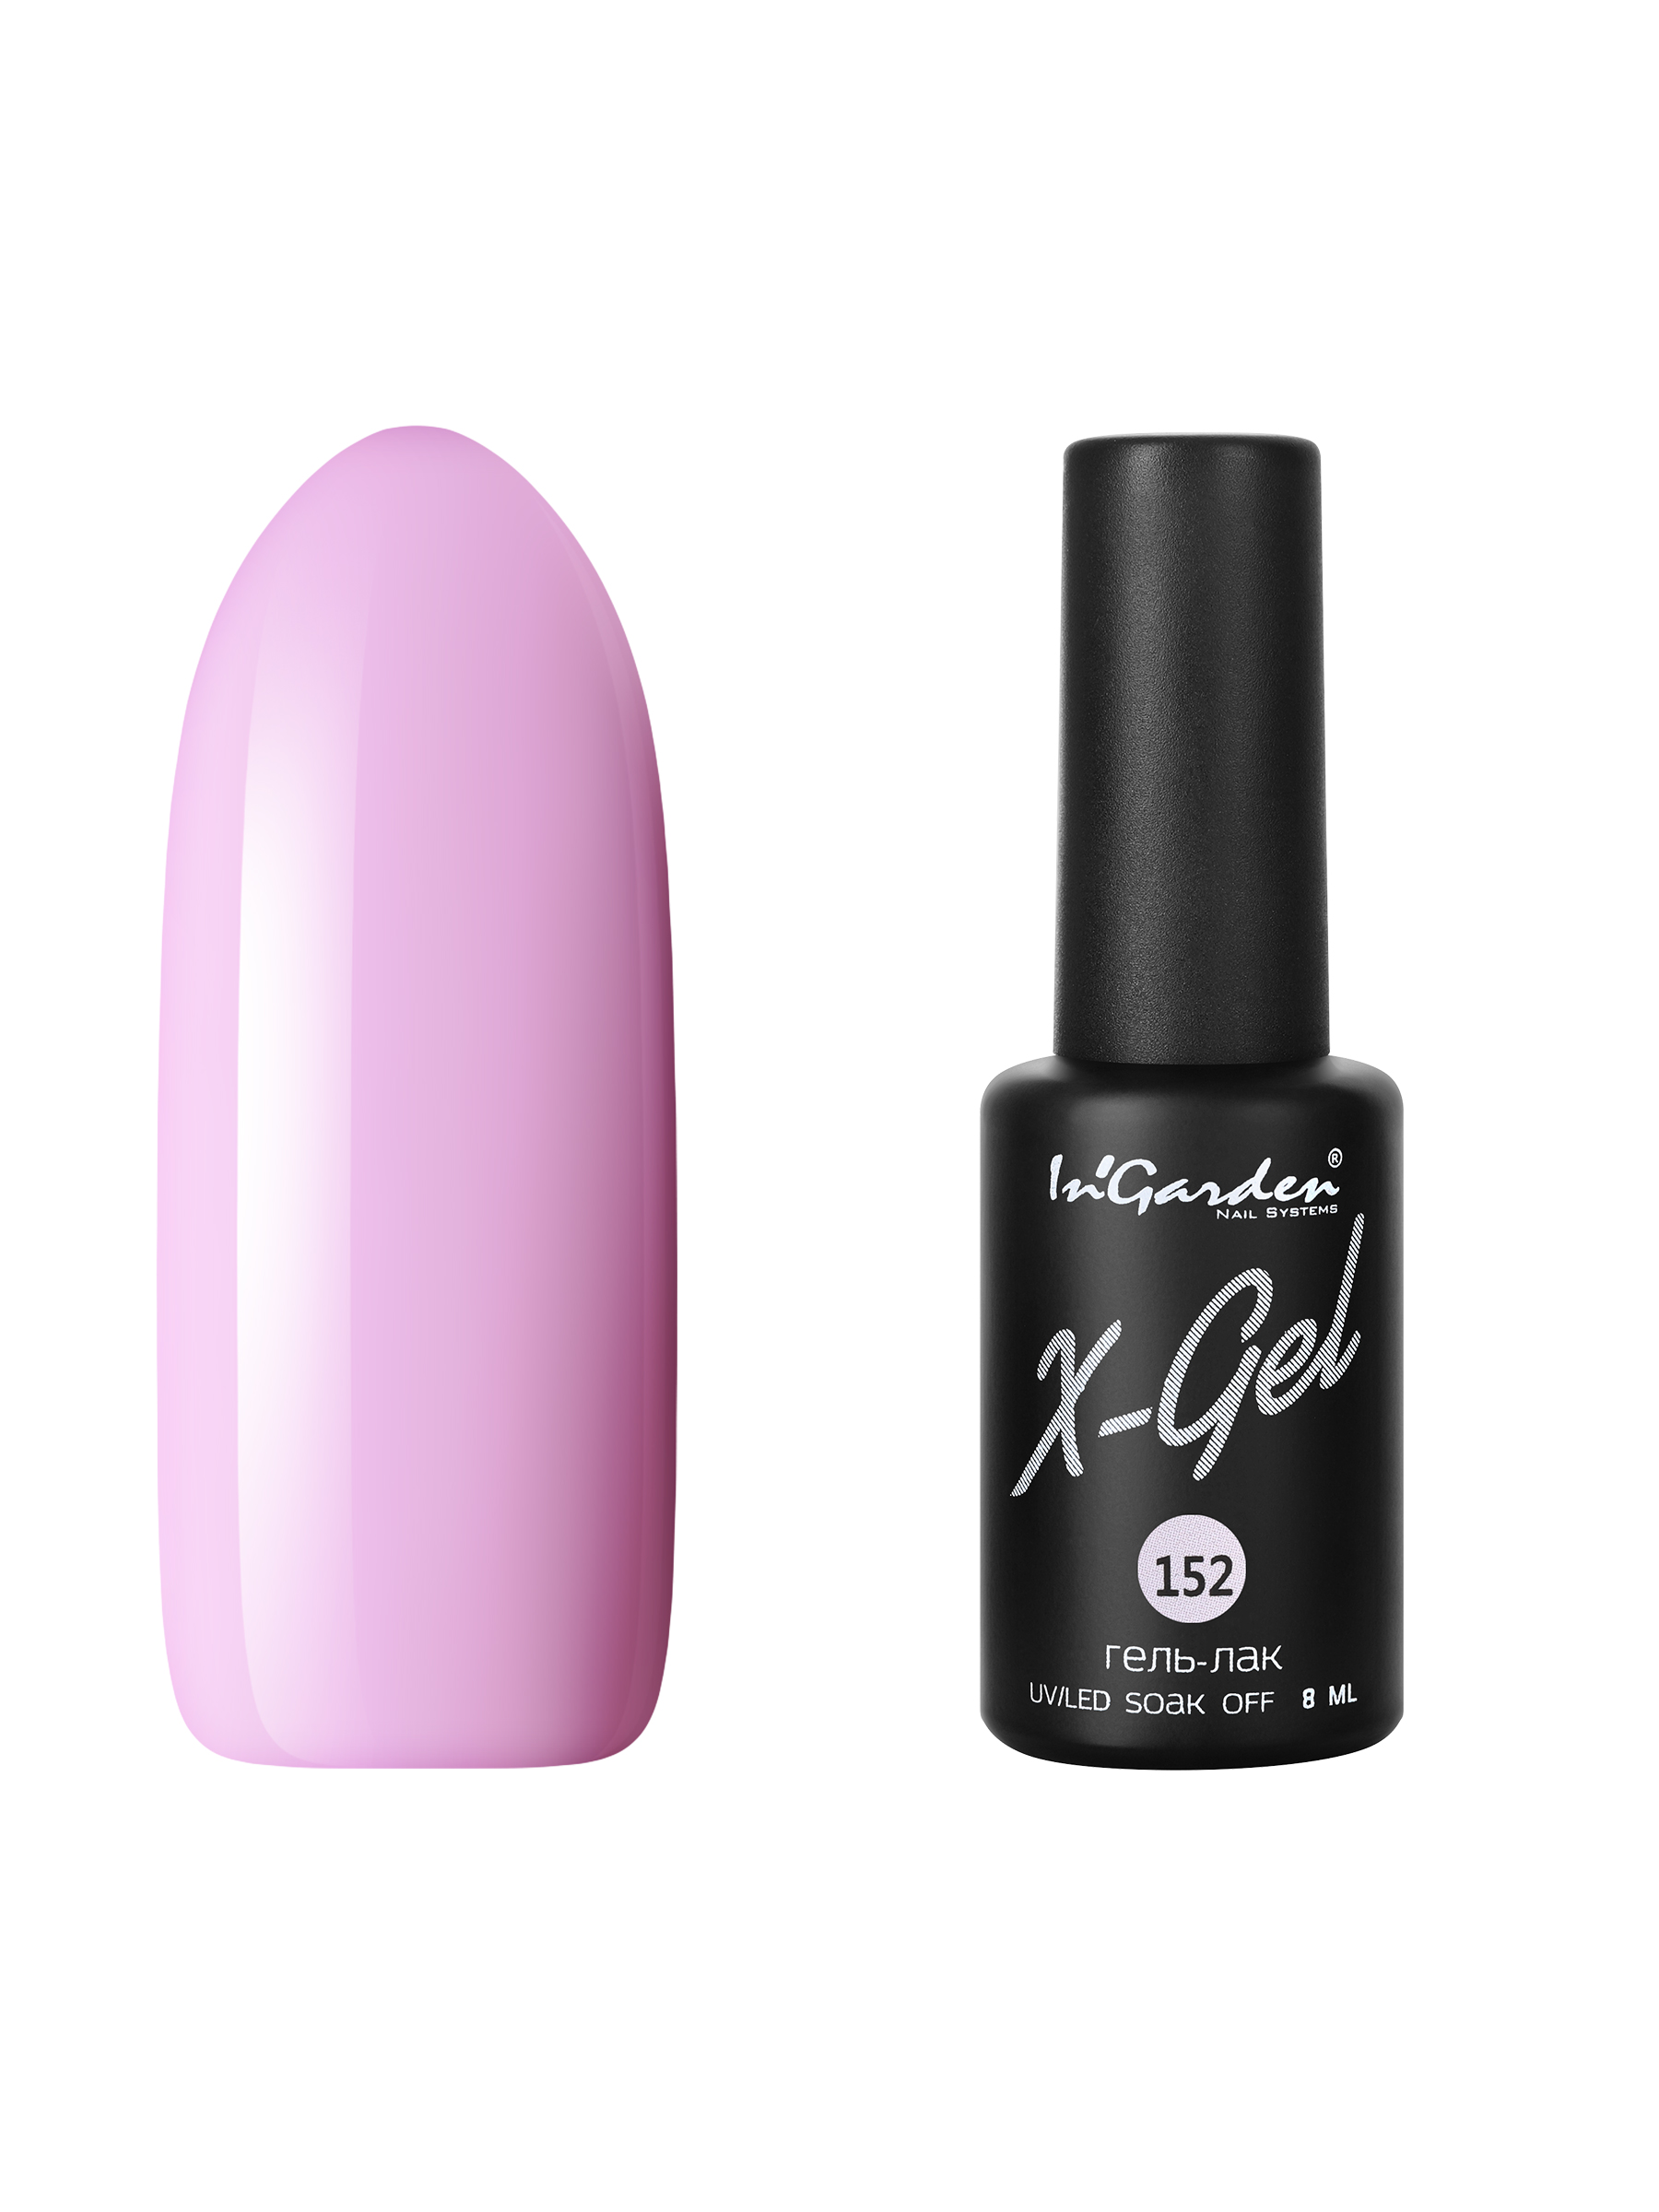 Купить Гель лак для ногтей In’Garden X-Gel N° 152 лавандово-розовый плотный 8 мл, In'Garden